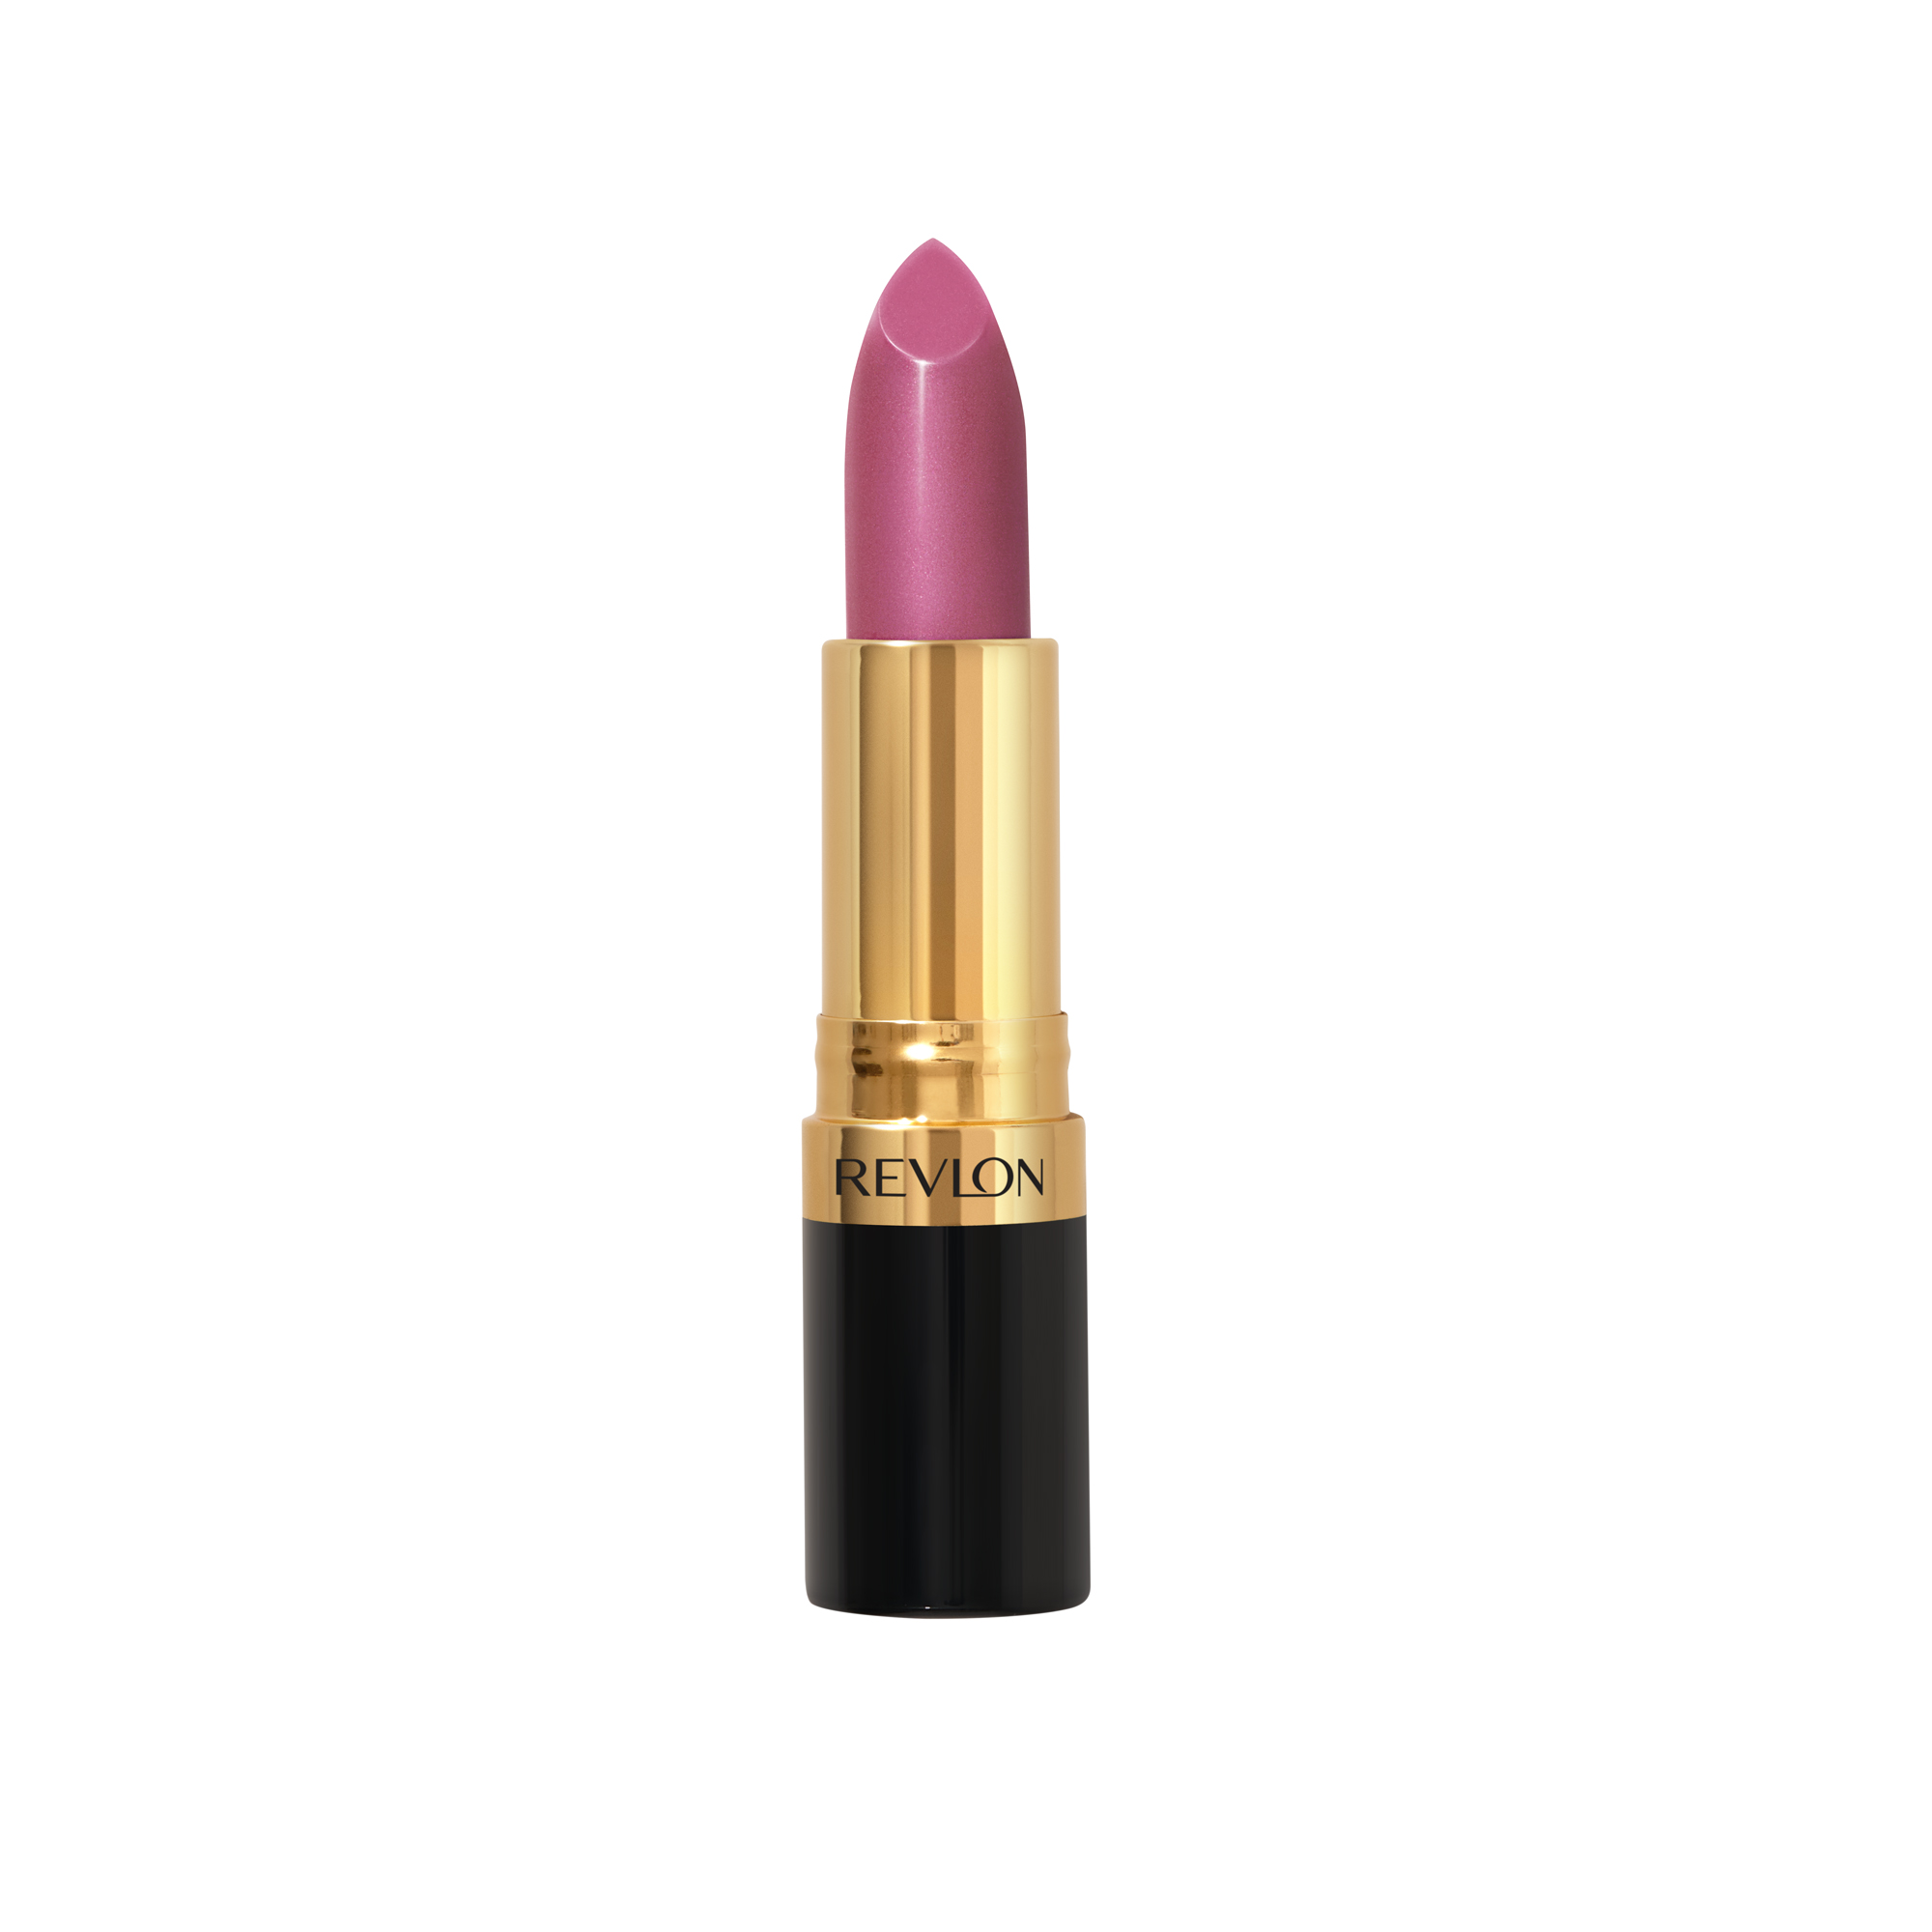 Revlon Super Lustrous Lipstick, Kissable Pink - image 1 of 7